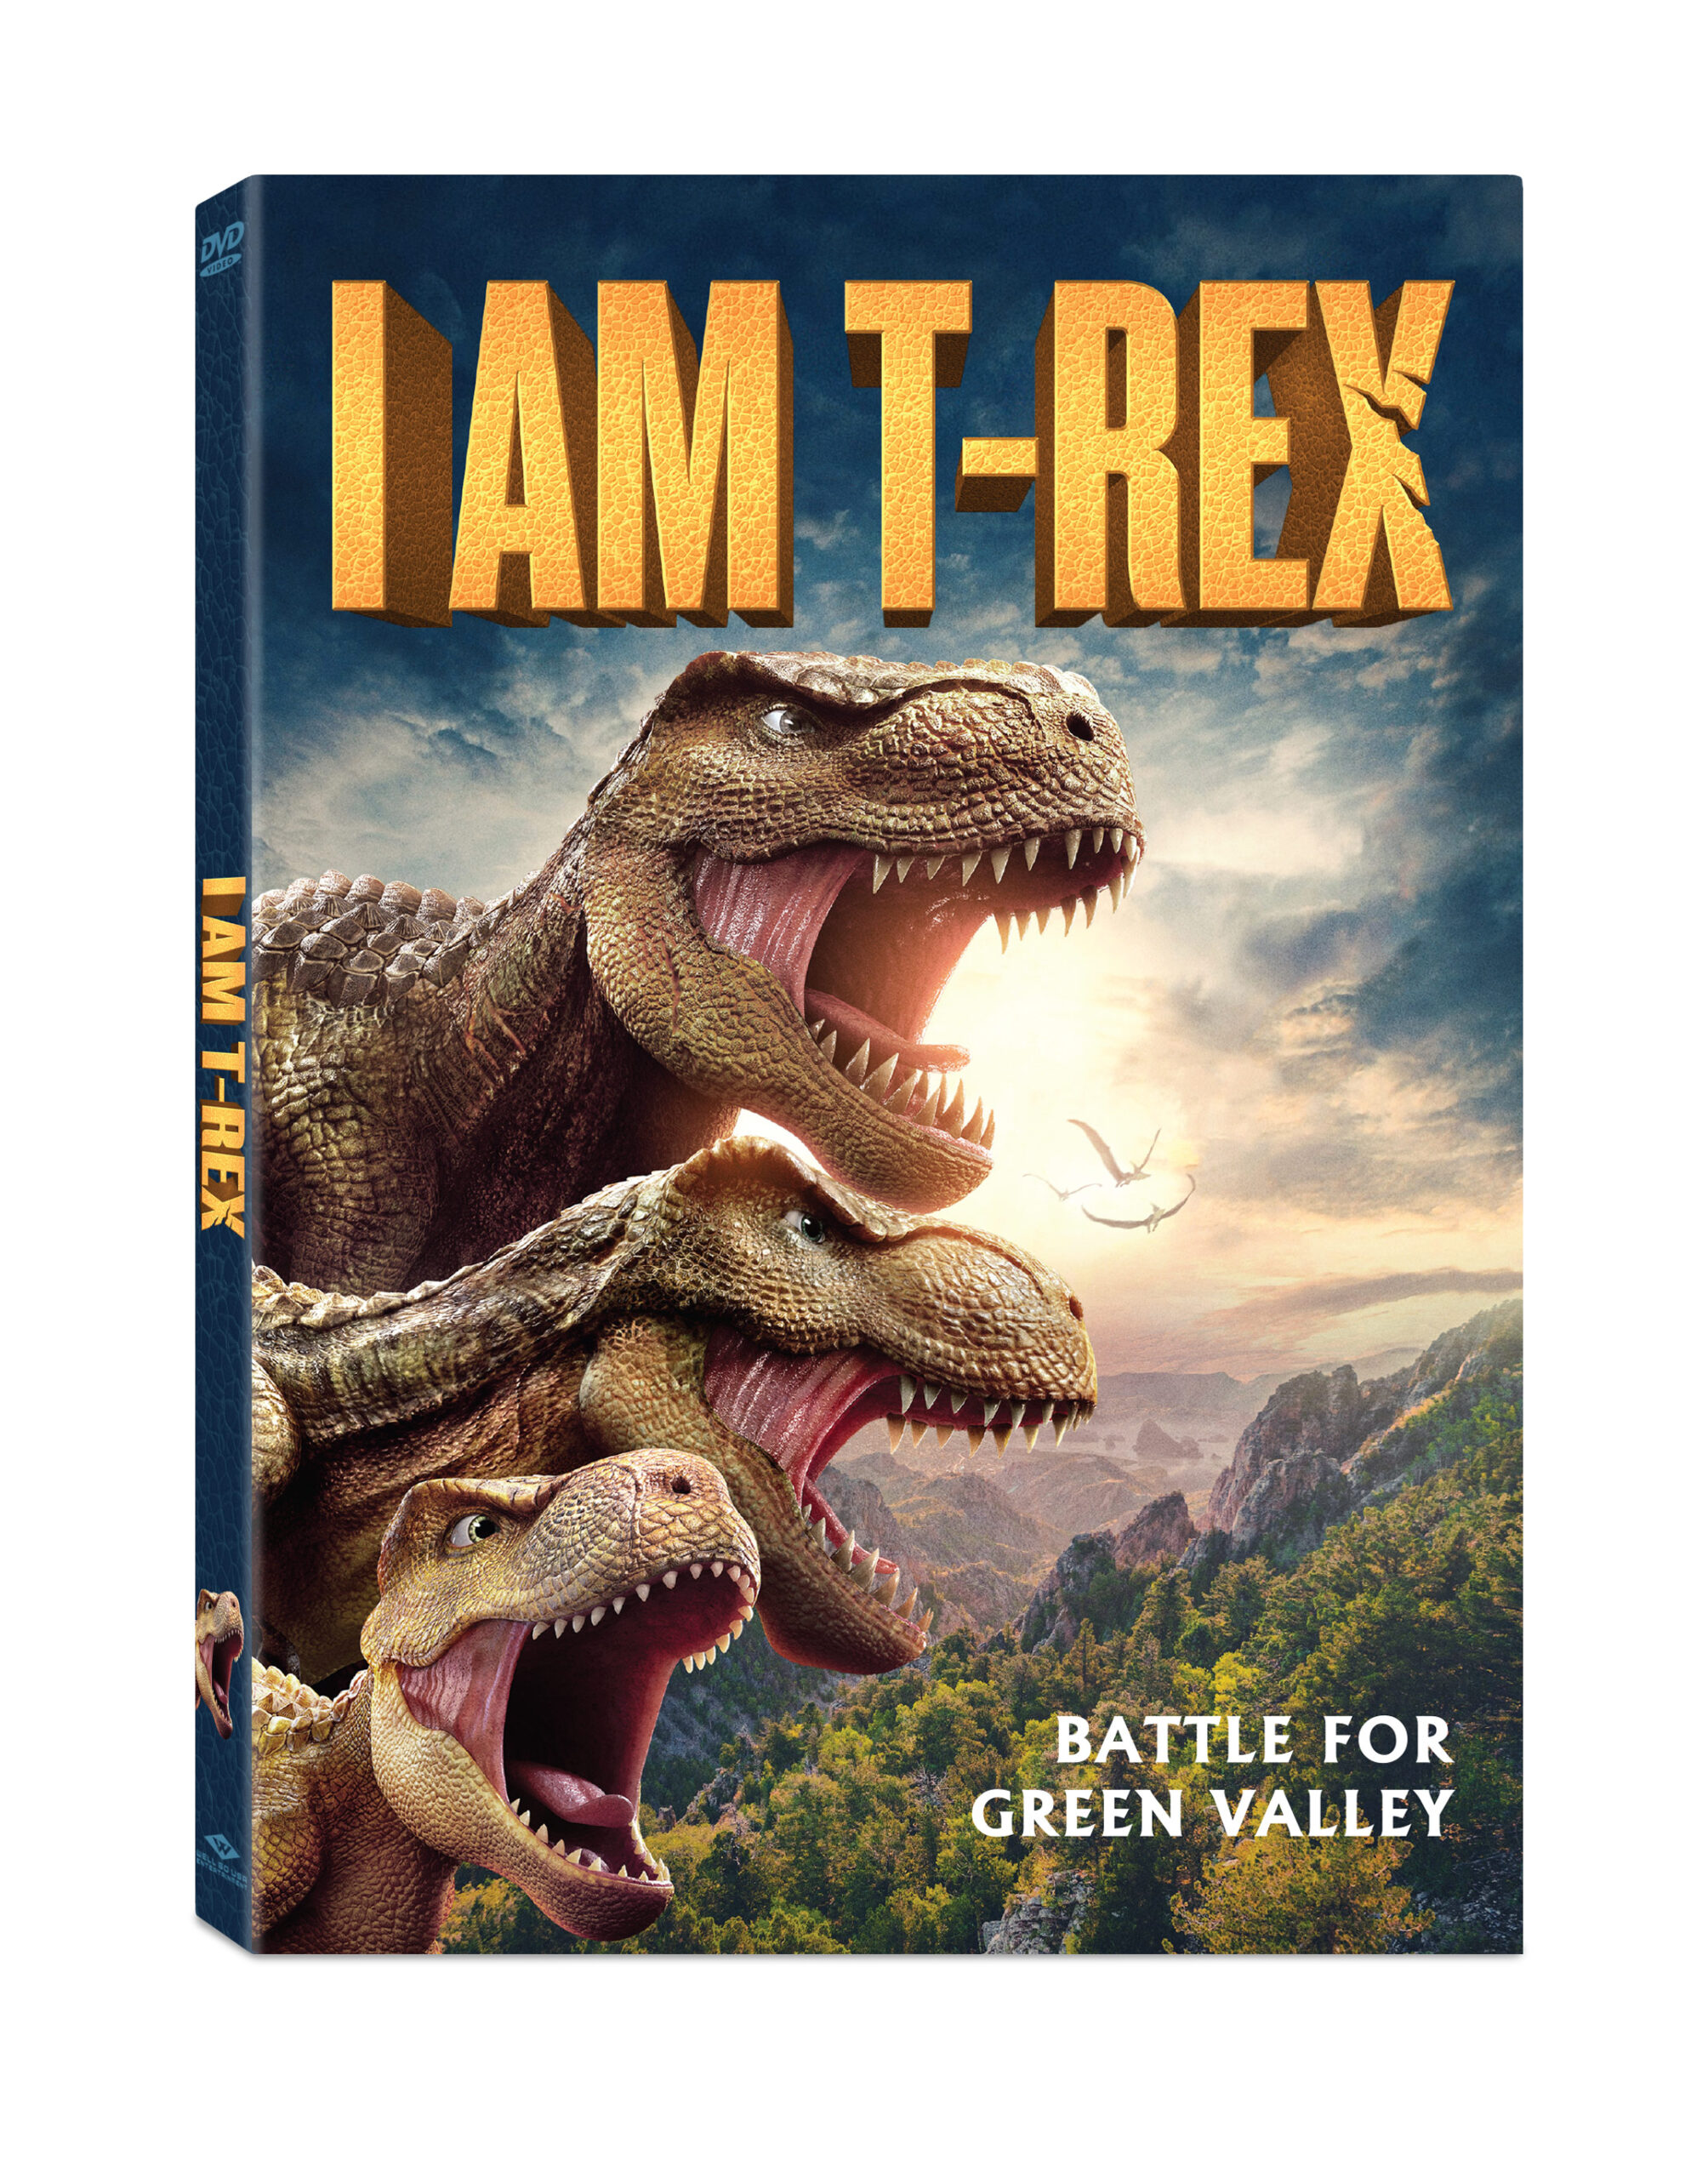 I Am T-Rex 